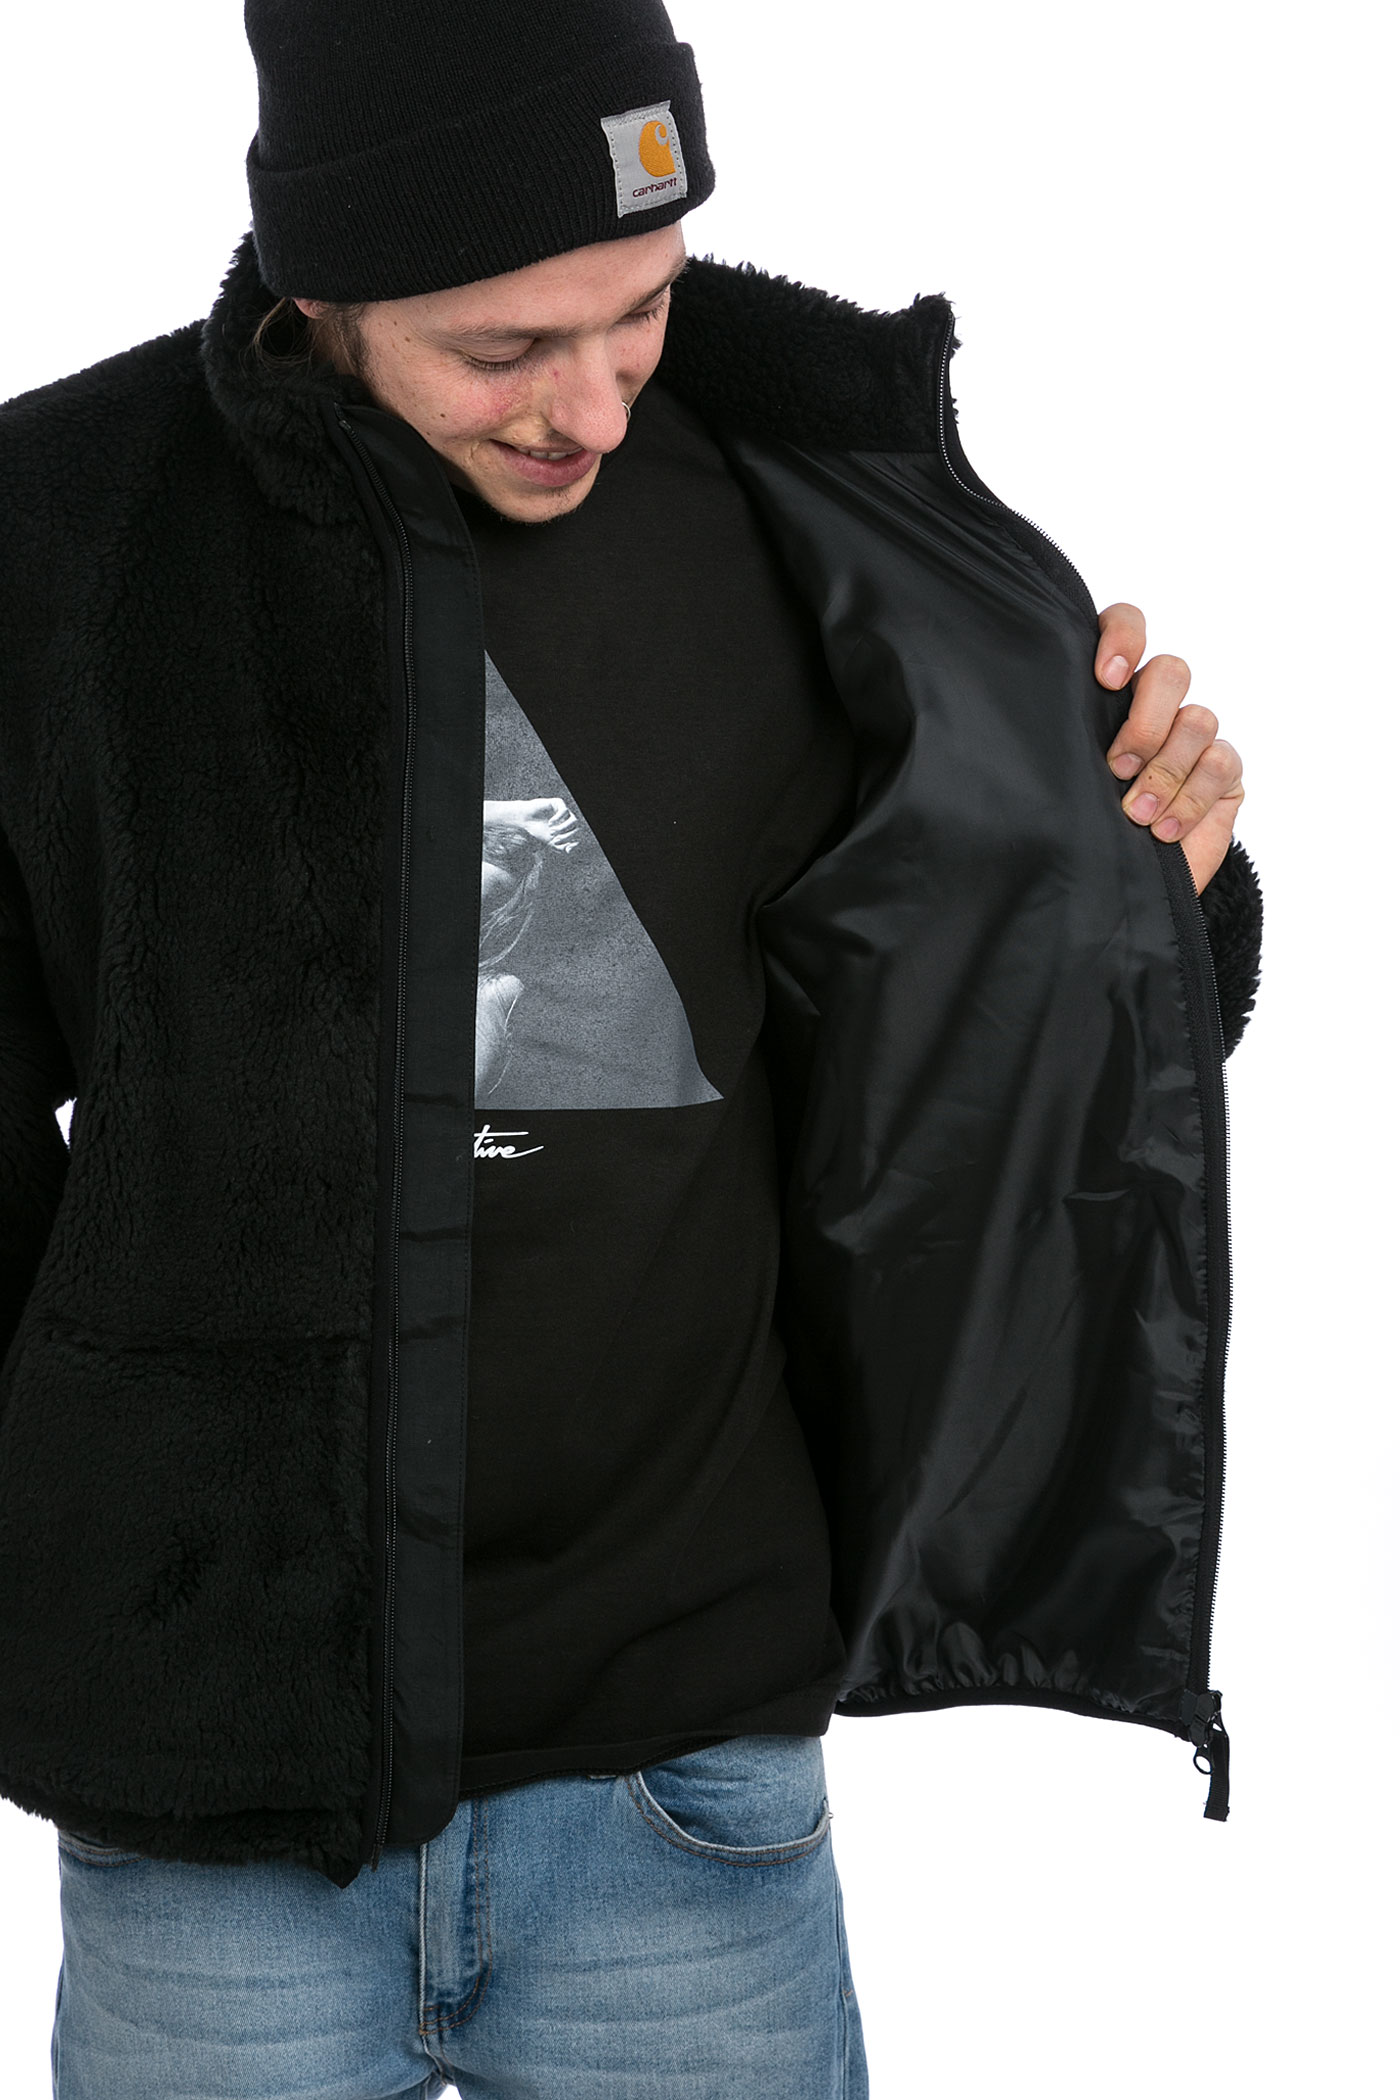 Polar Skateboards Halberg Berber Fleece Jacket (black) buy at ...